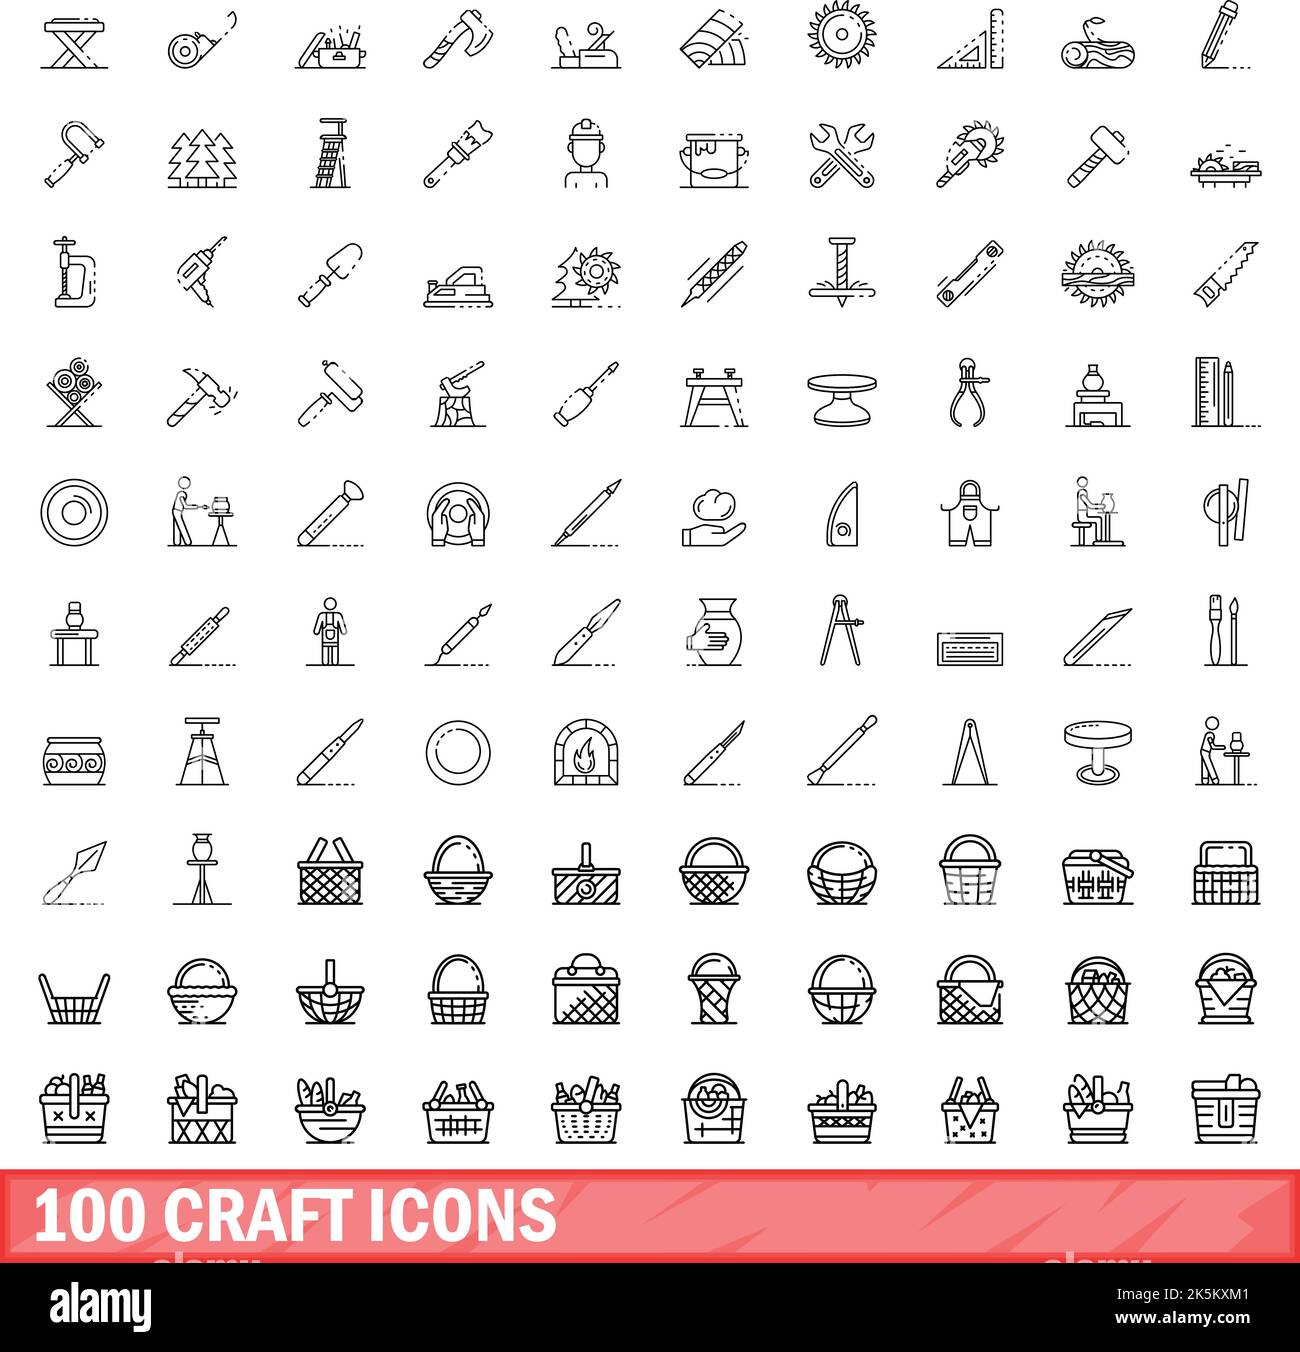 100 Bastelsymbole eingestellt. Umreißen Abbildung von 100 Handwerk Symbole Vektor-Set isoliert auf weißem Hintergrund Stock Vektor